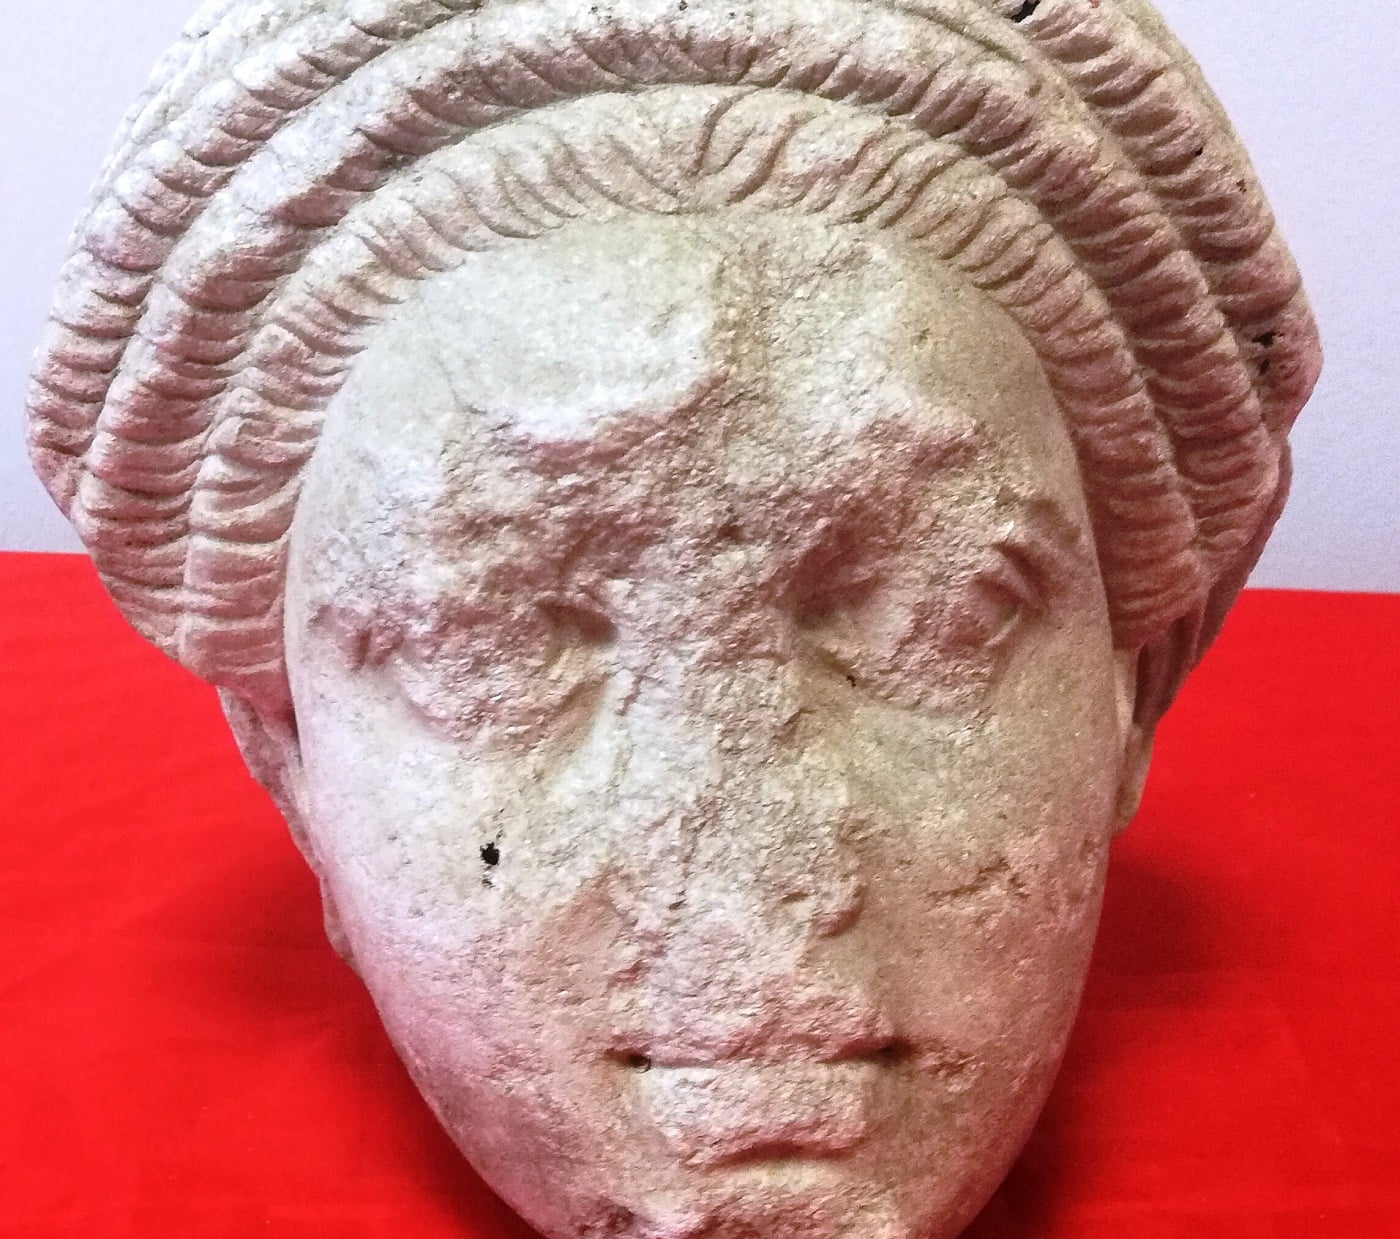 Θεσσαλονίκη: Βρέθηκε μέσα σε διαμέρισμα μαρμάρινη κεφαλή αγάλματος του 2ου αιώνα π.Χ. (φωτο)